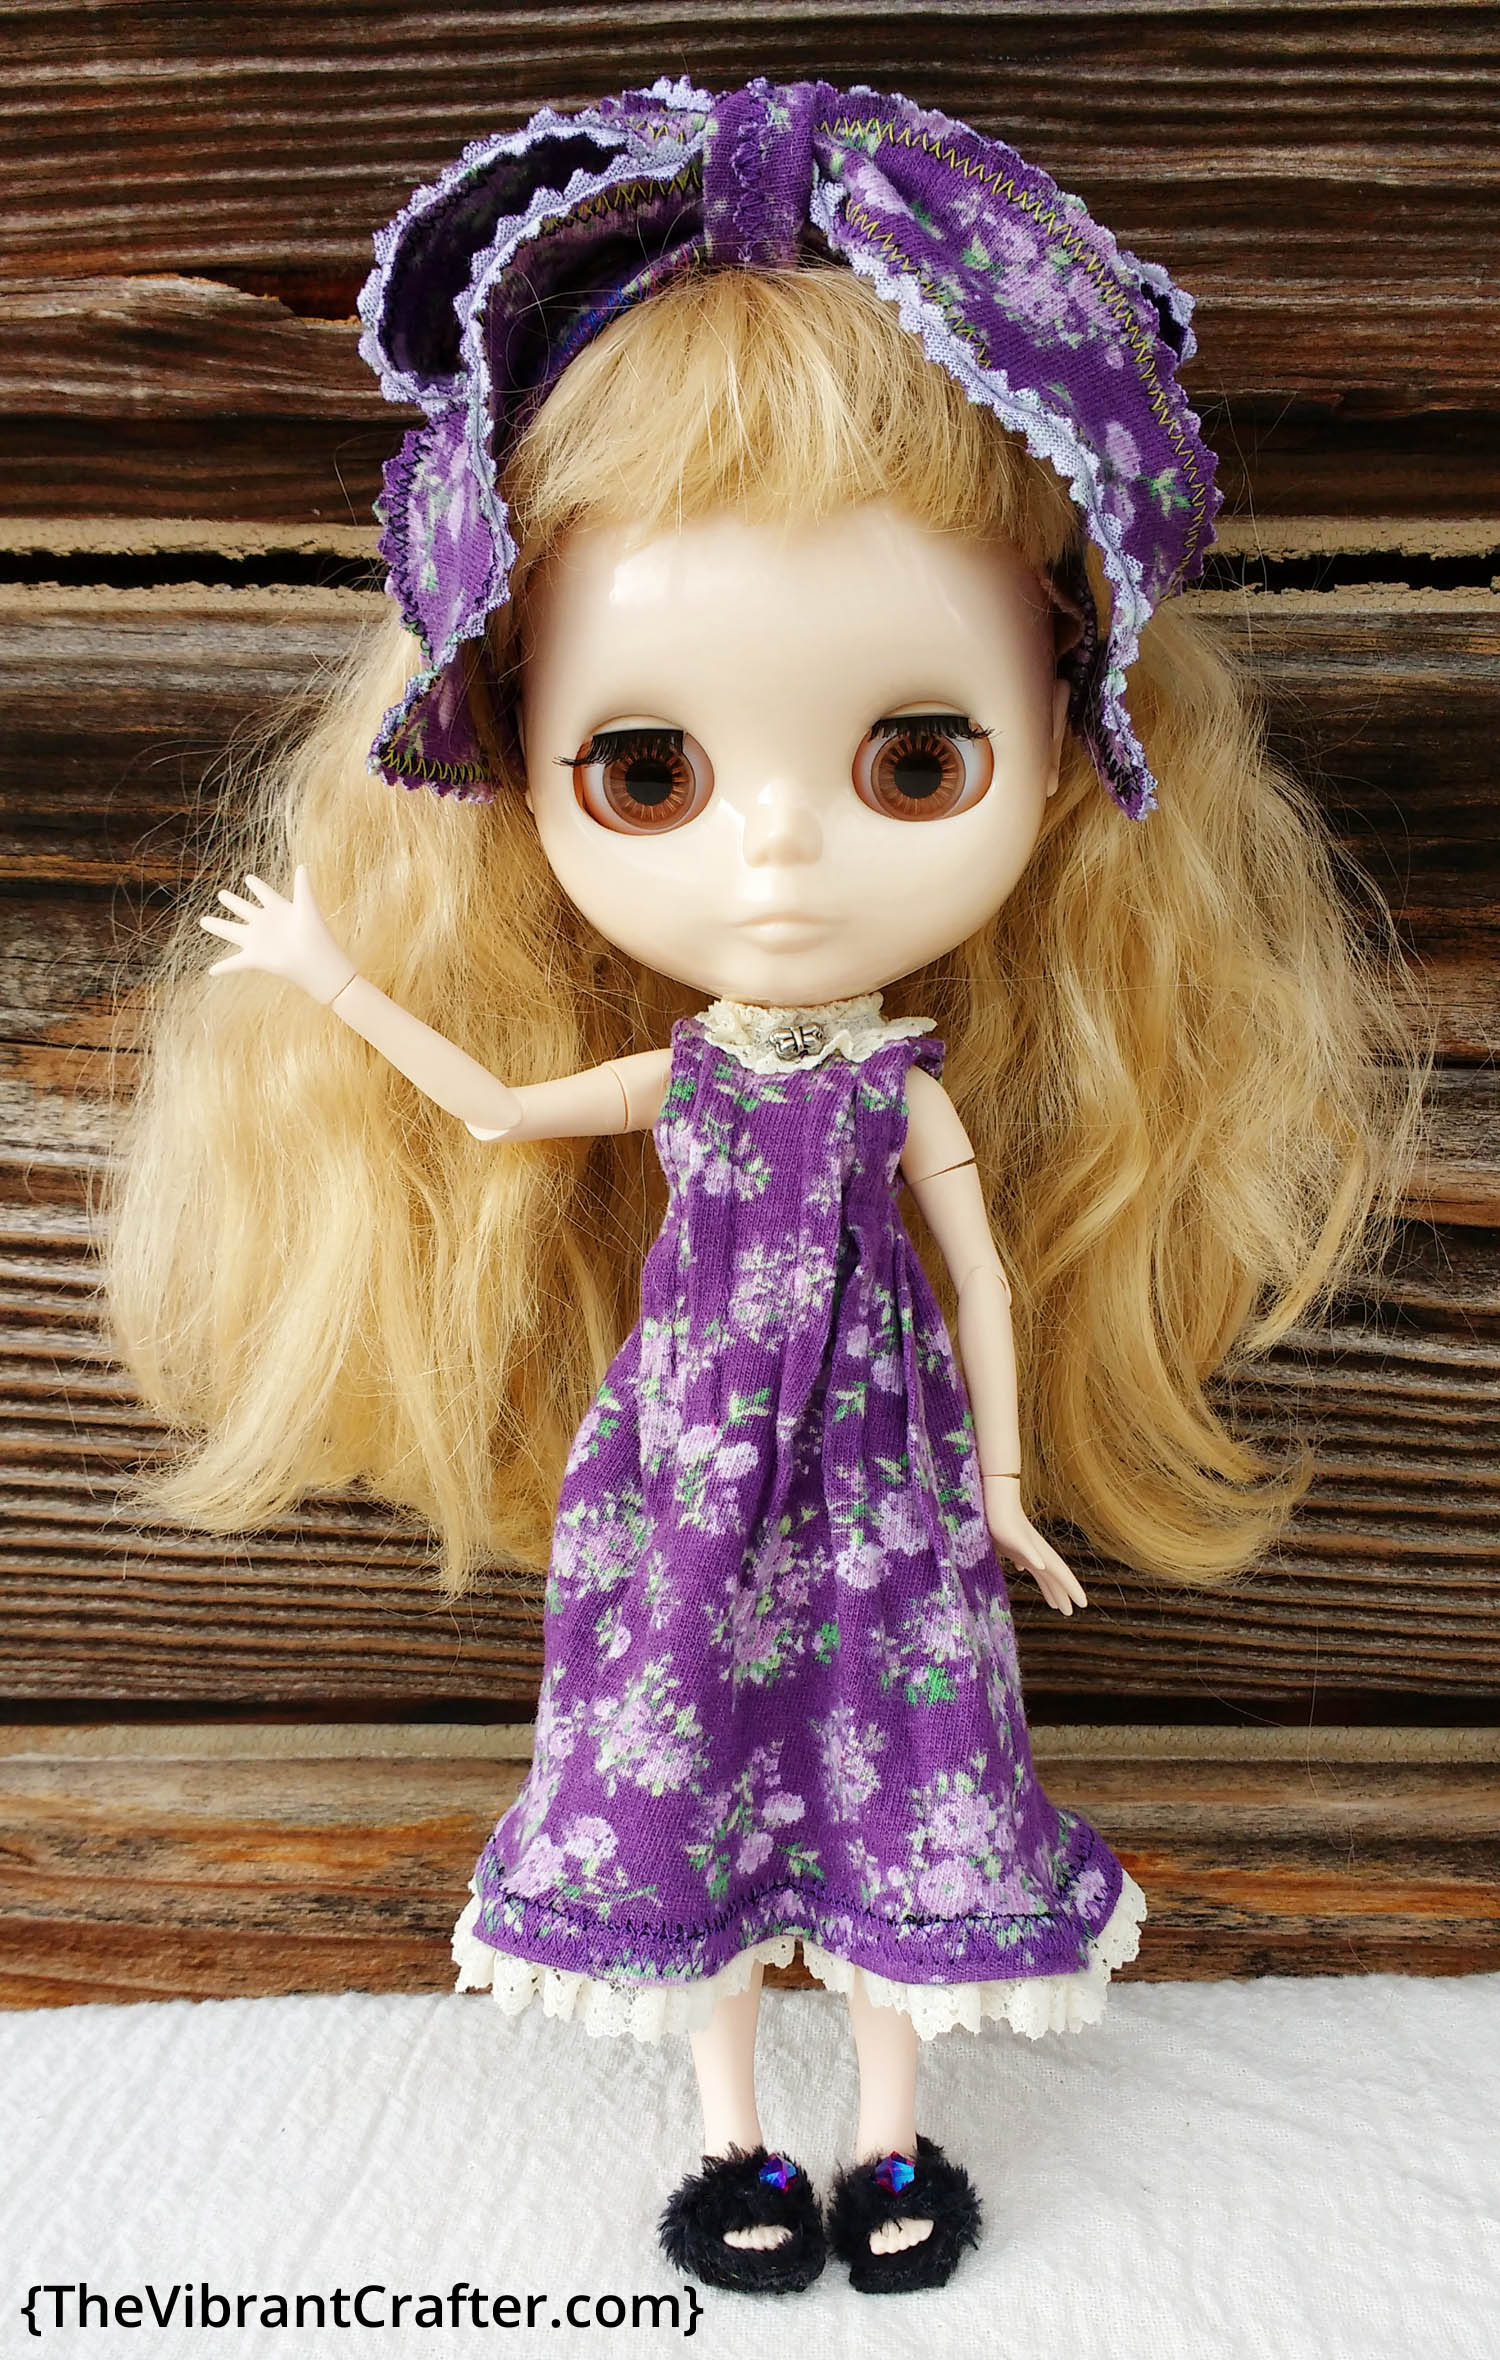 Factory Blythe Doll in a Purple Dress